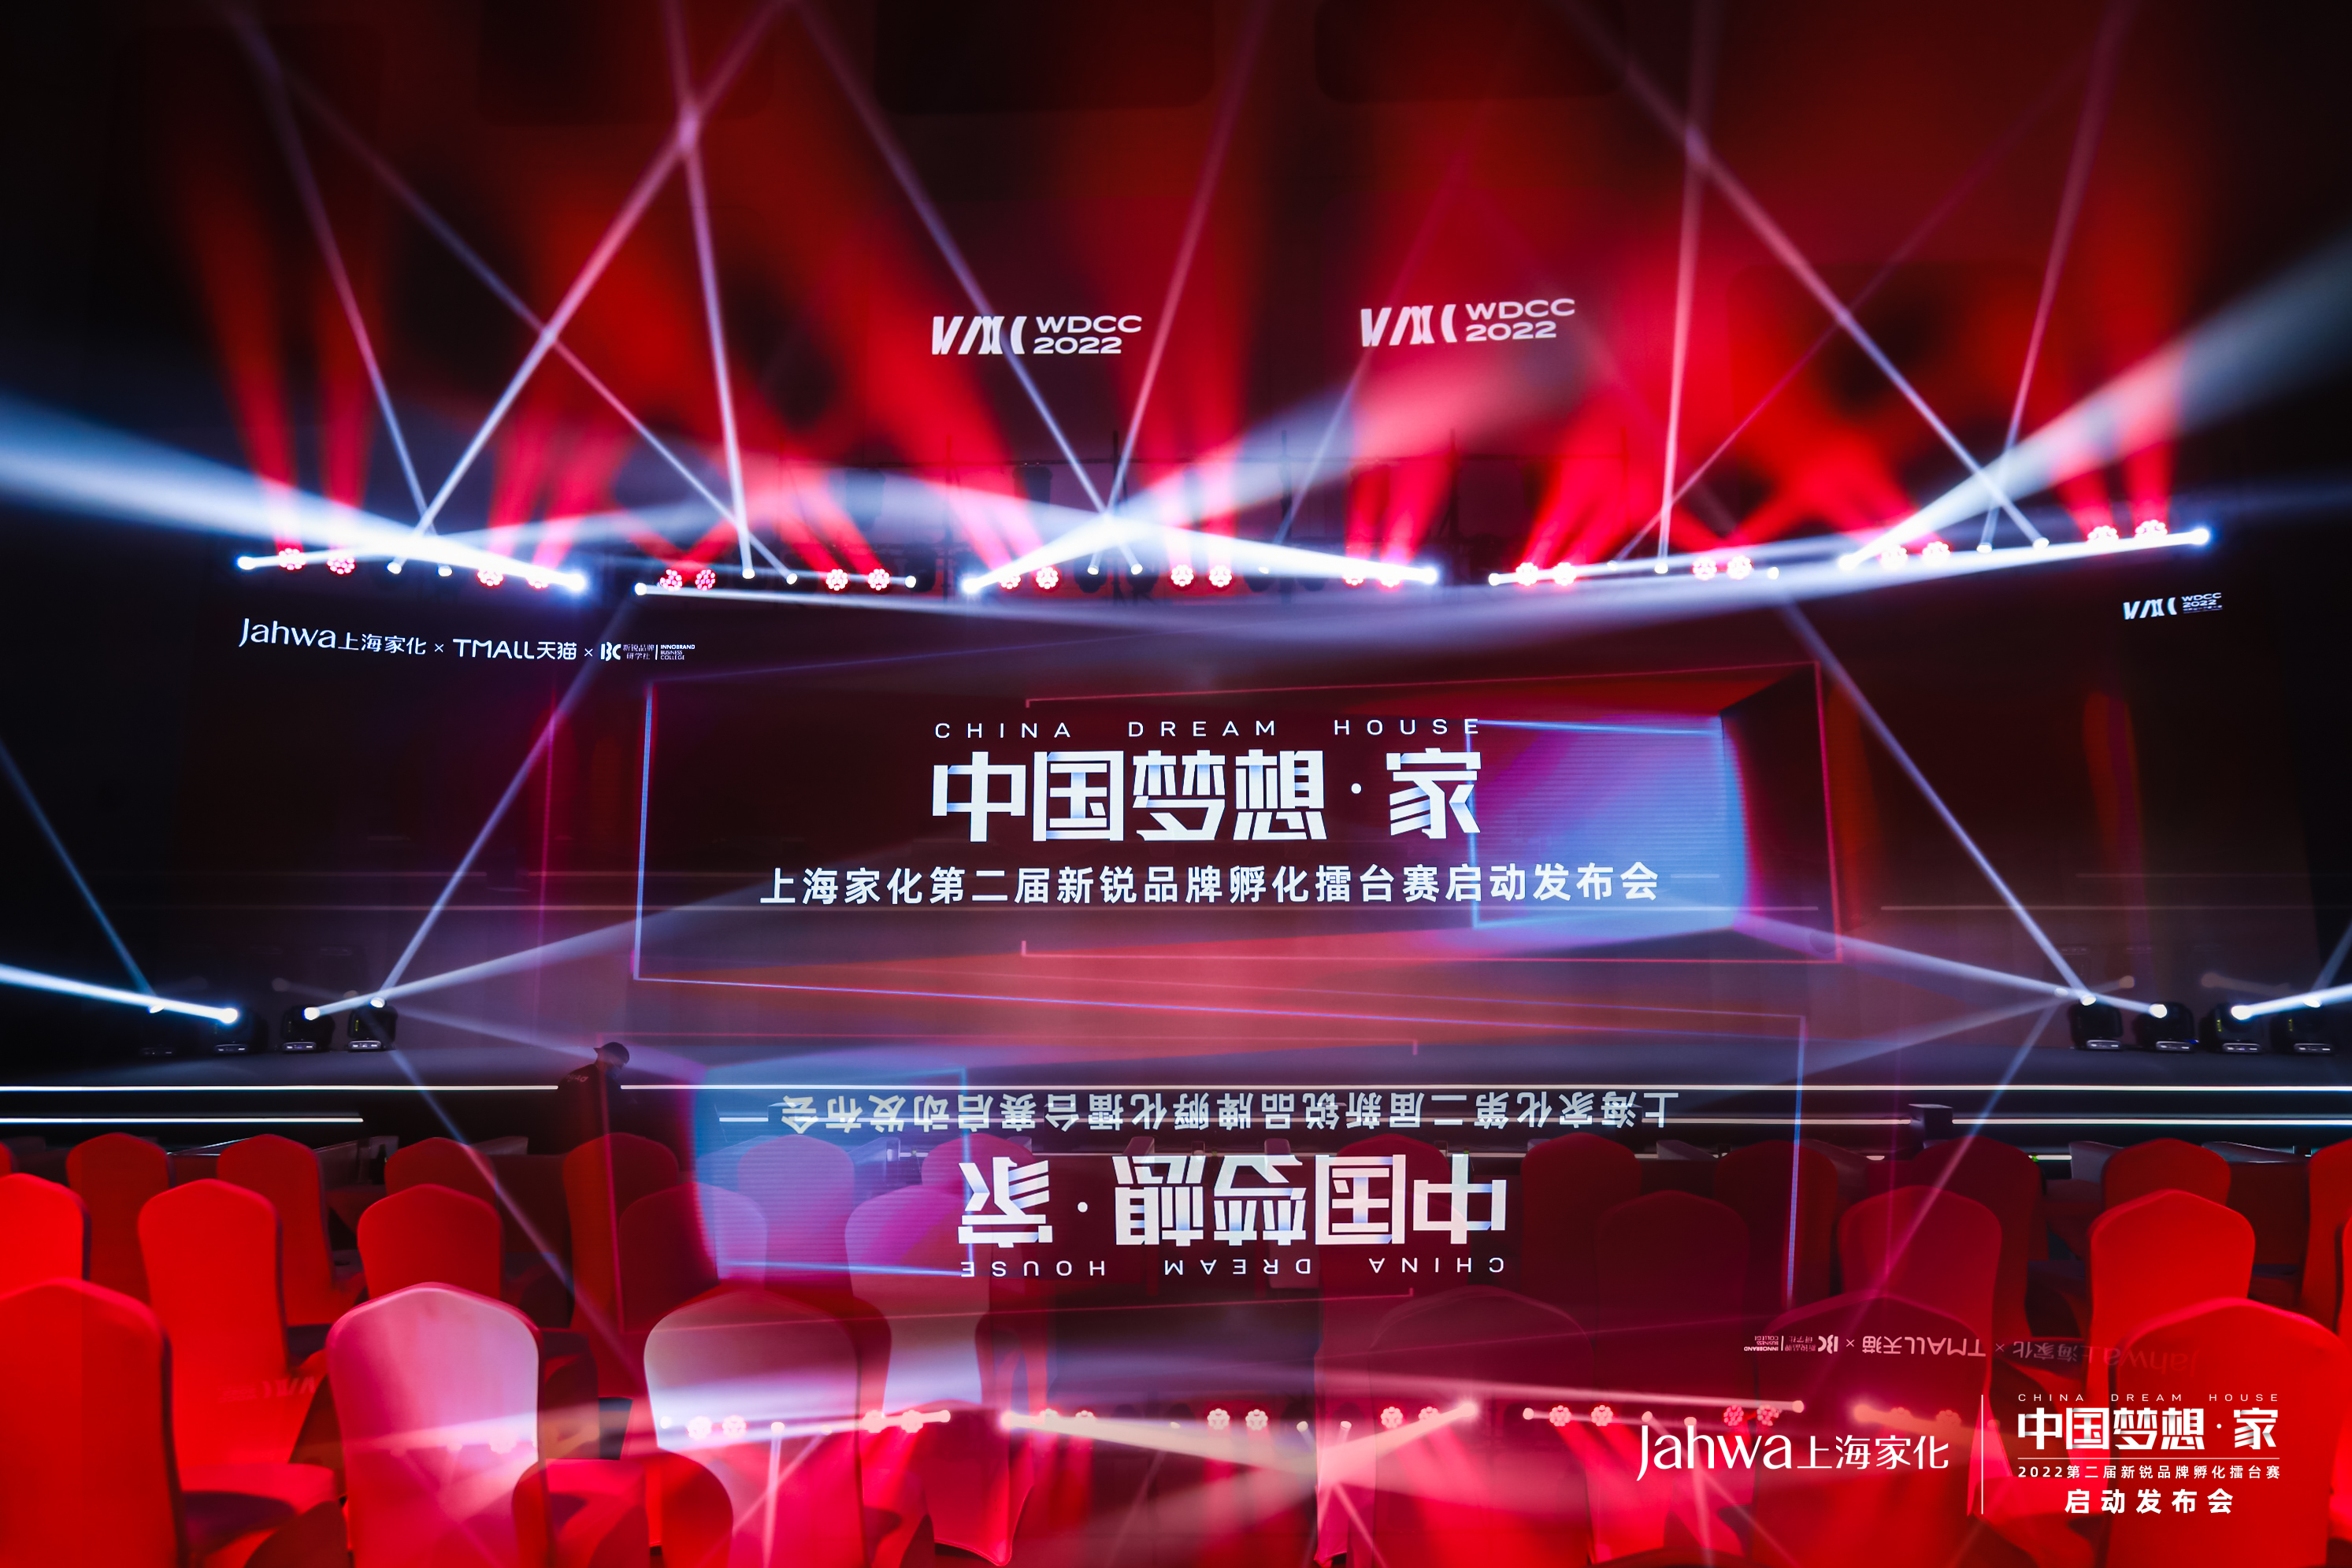 第二届“中国梦想·家”新锐品牌孵化擂台赛首秀世界设计之都大会 上海家化为新锐品牌照亮逐梦之路